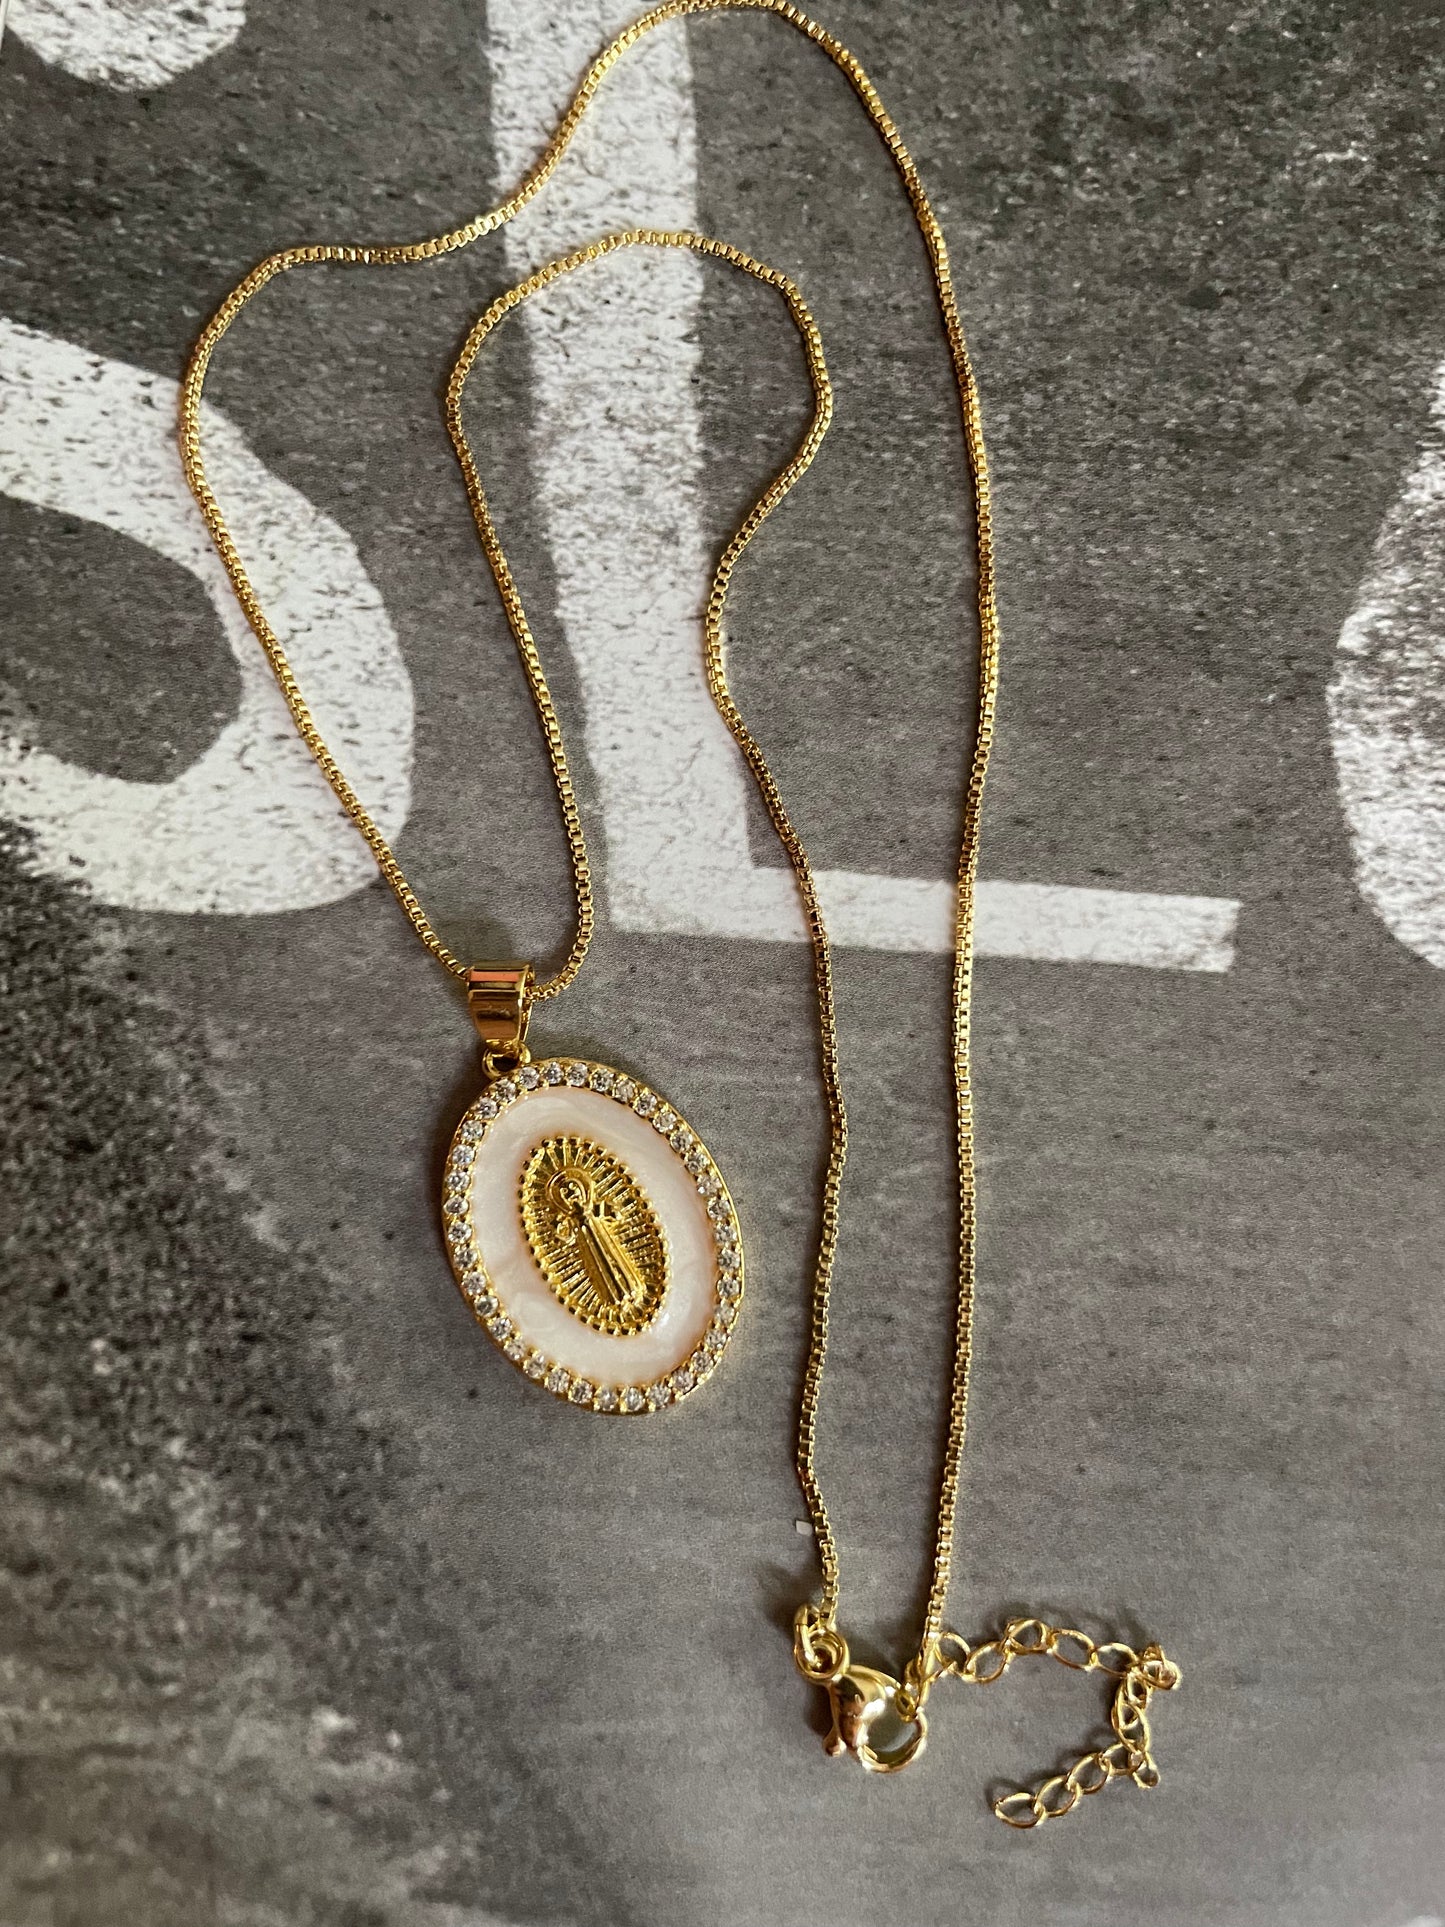 San Benito pendant necklace